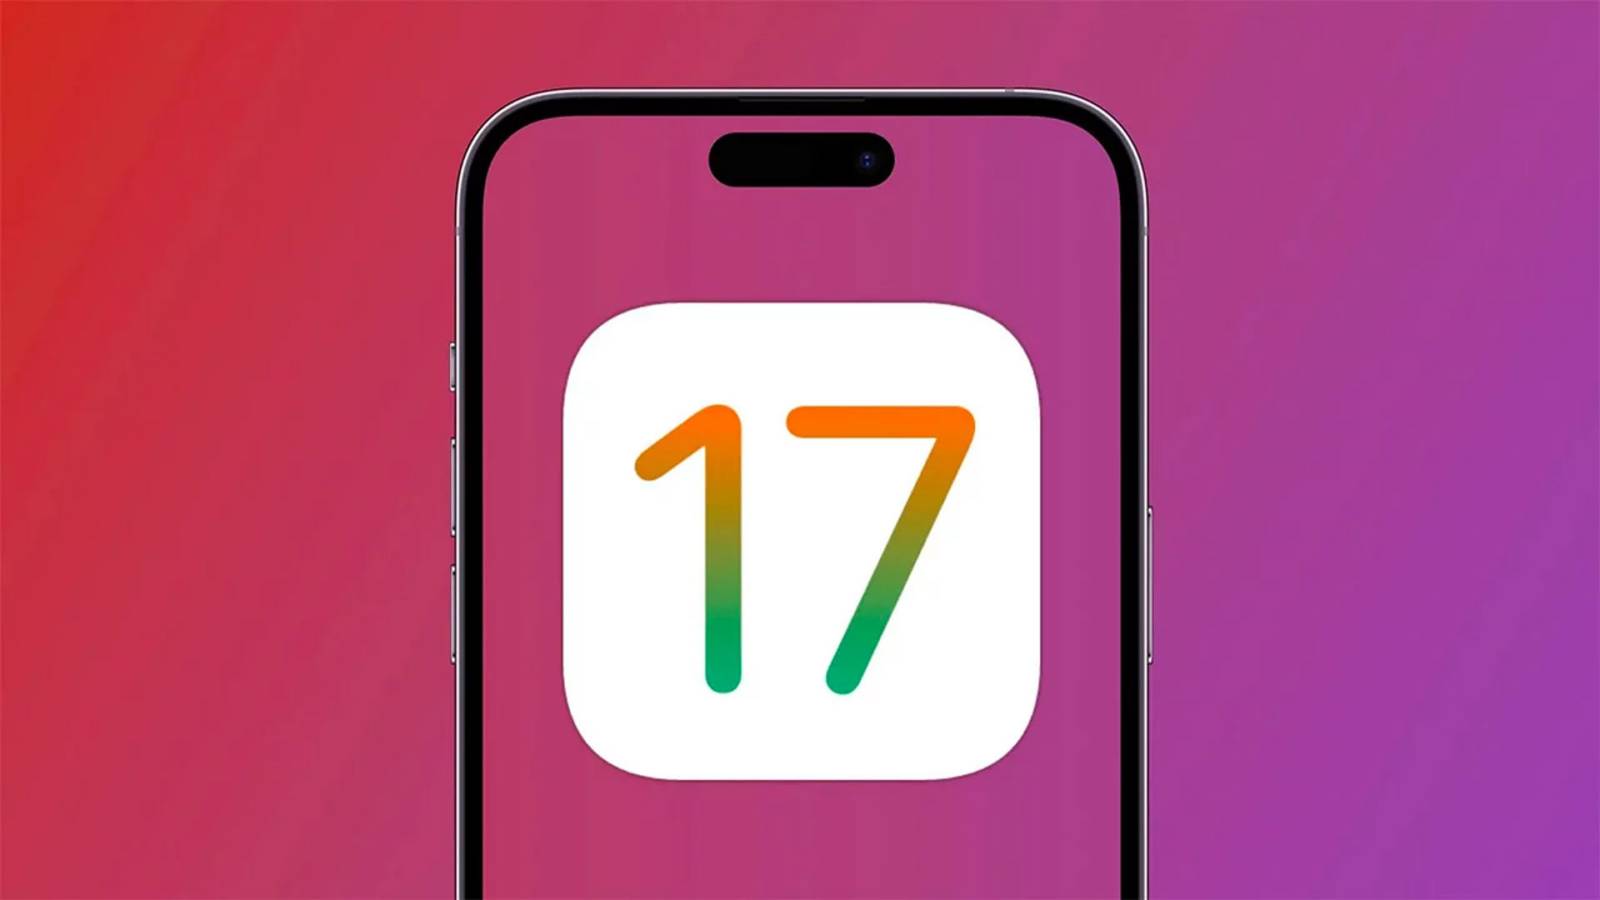 iOS 17.1 se lanzará para iPhone en el transcurso de este día